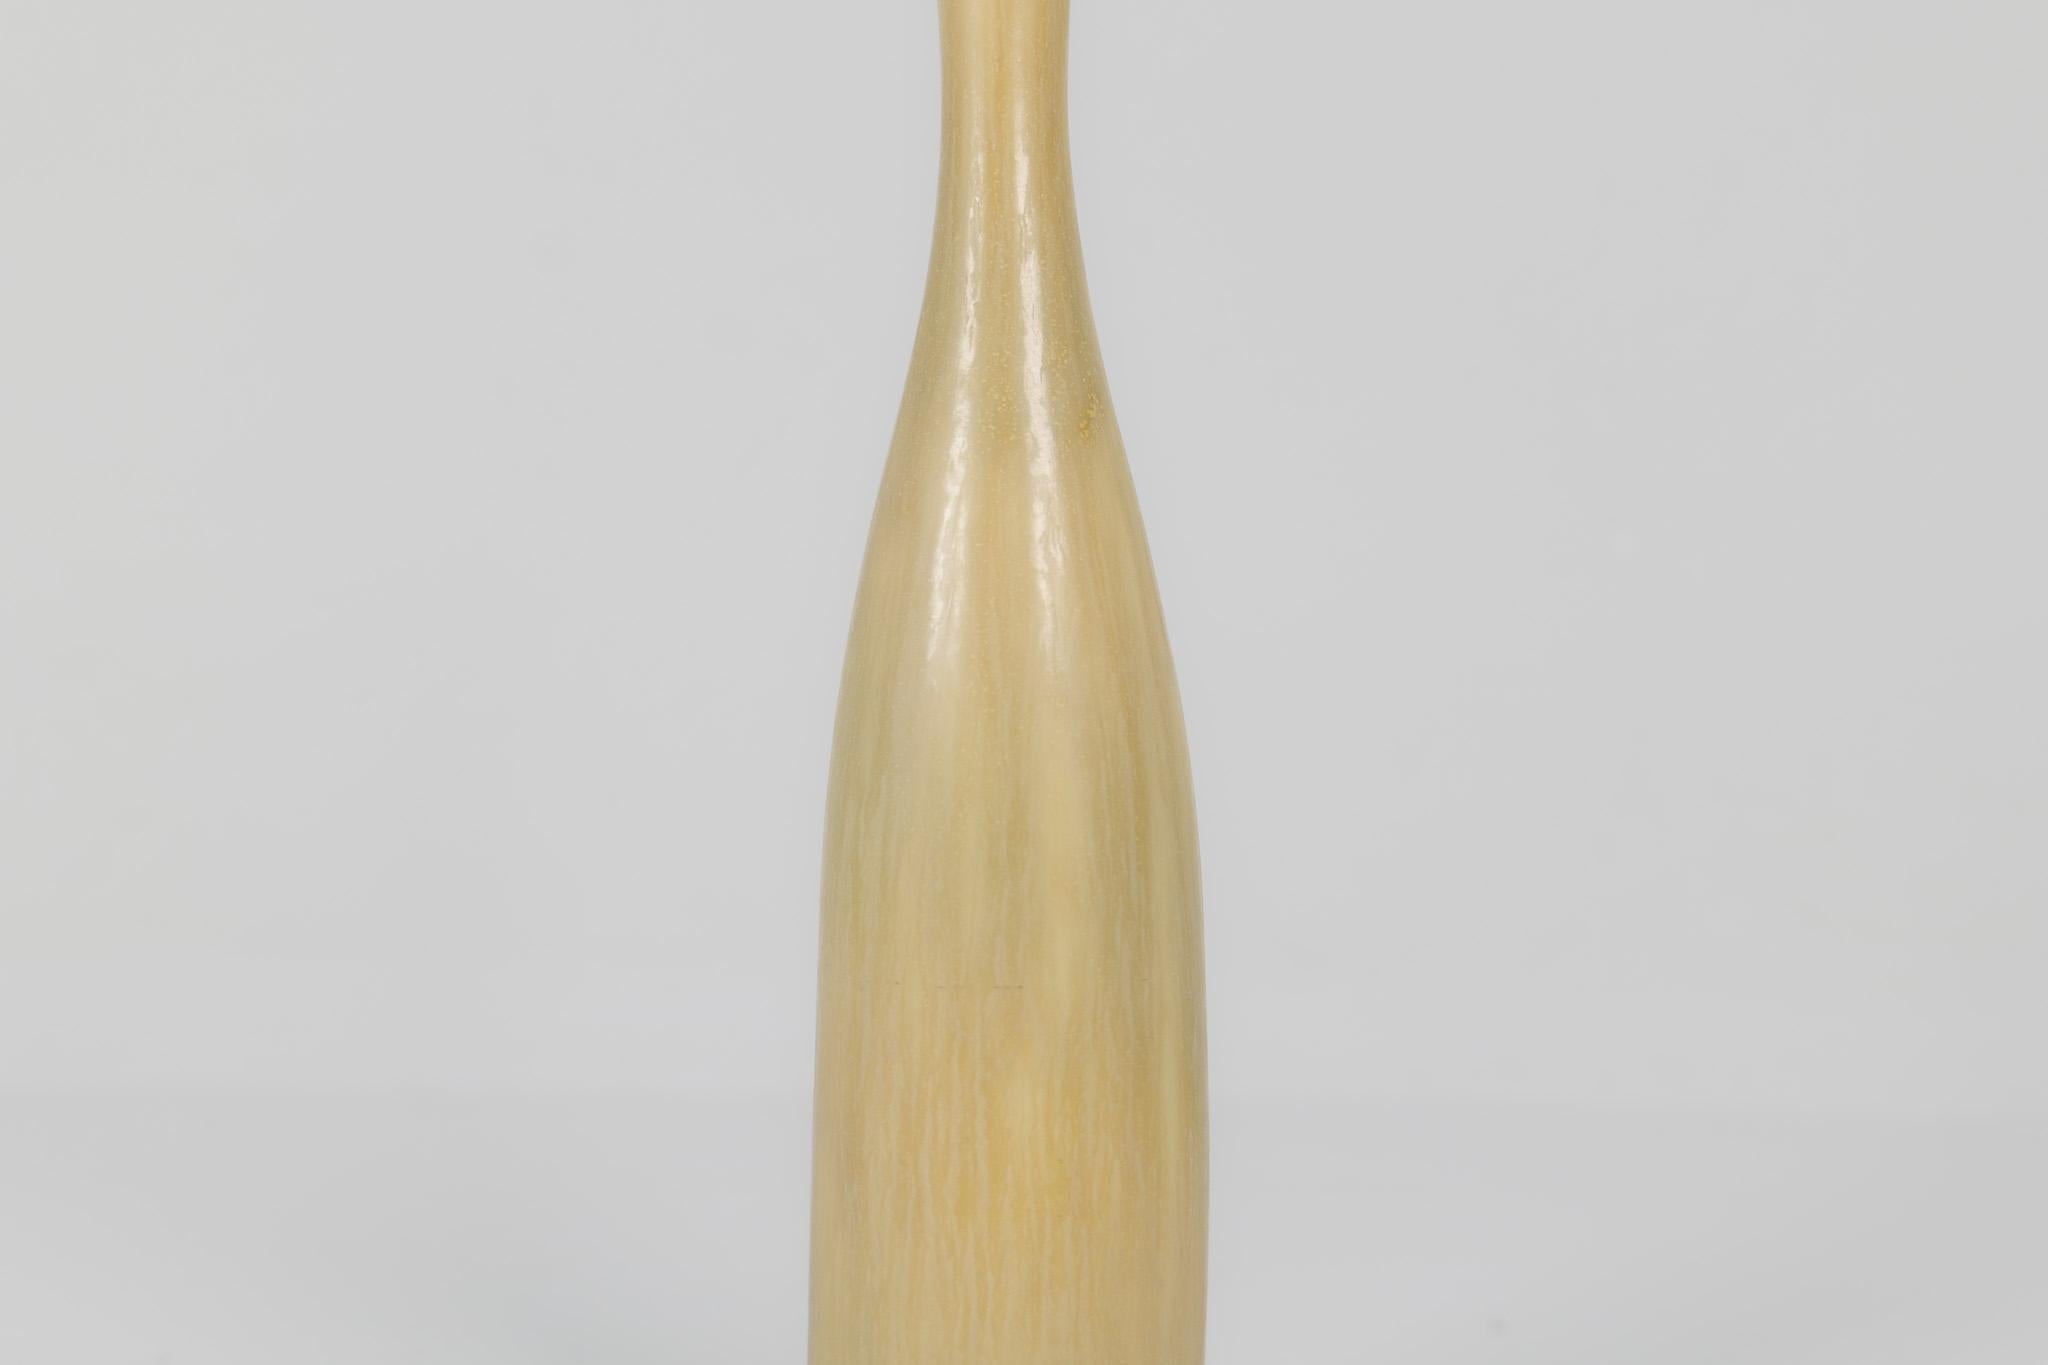 Midcentury Modern Sculptural Vase Rörstrand by Carl Harry Stålhane, Sweden, 1950 In Good Condition For Sale In Hillringsberg, SE